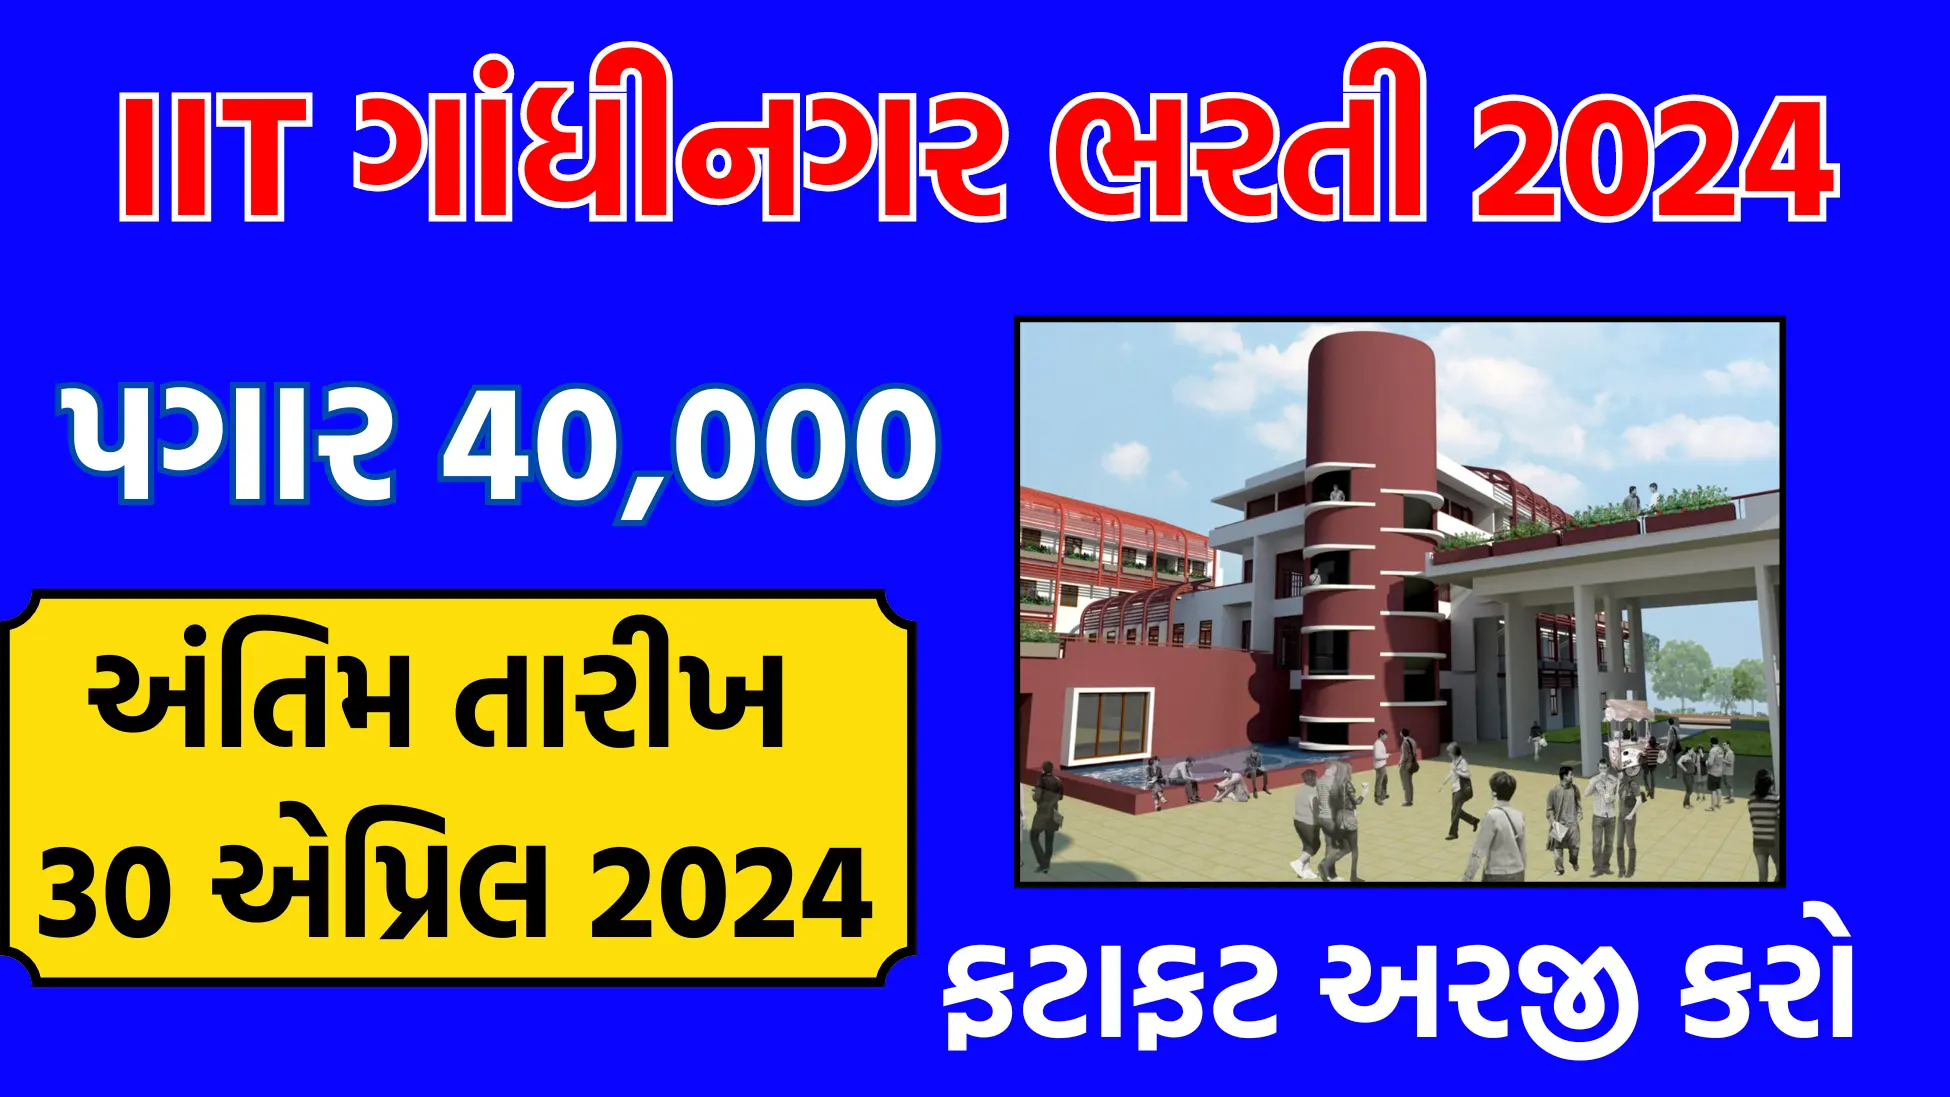 IIT Gandhinagar Bharti 2024